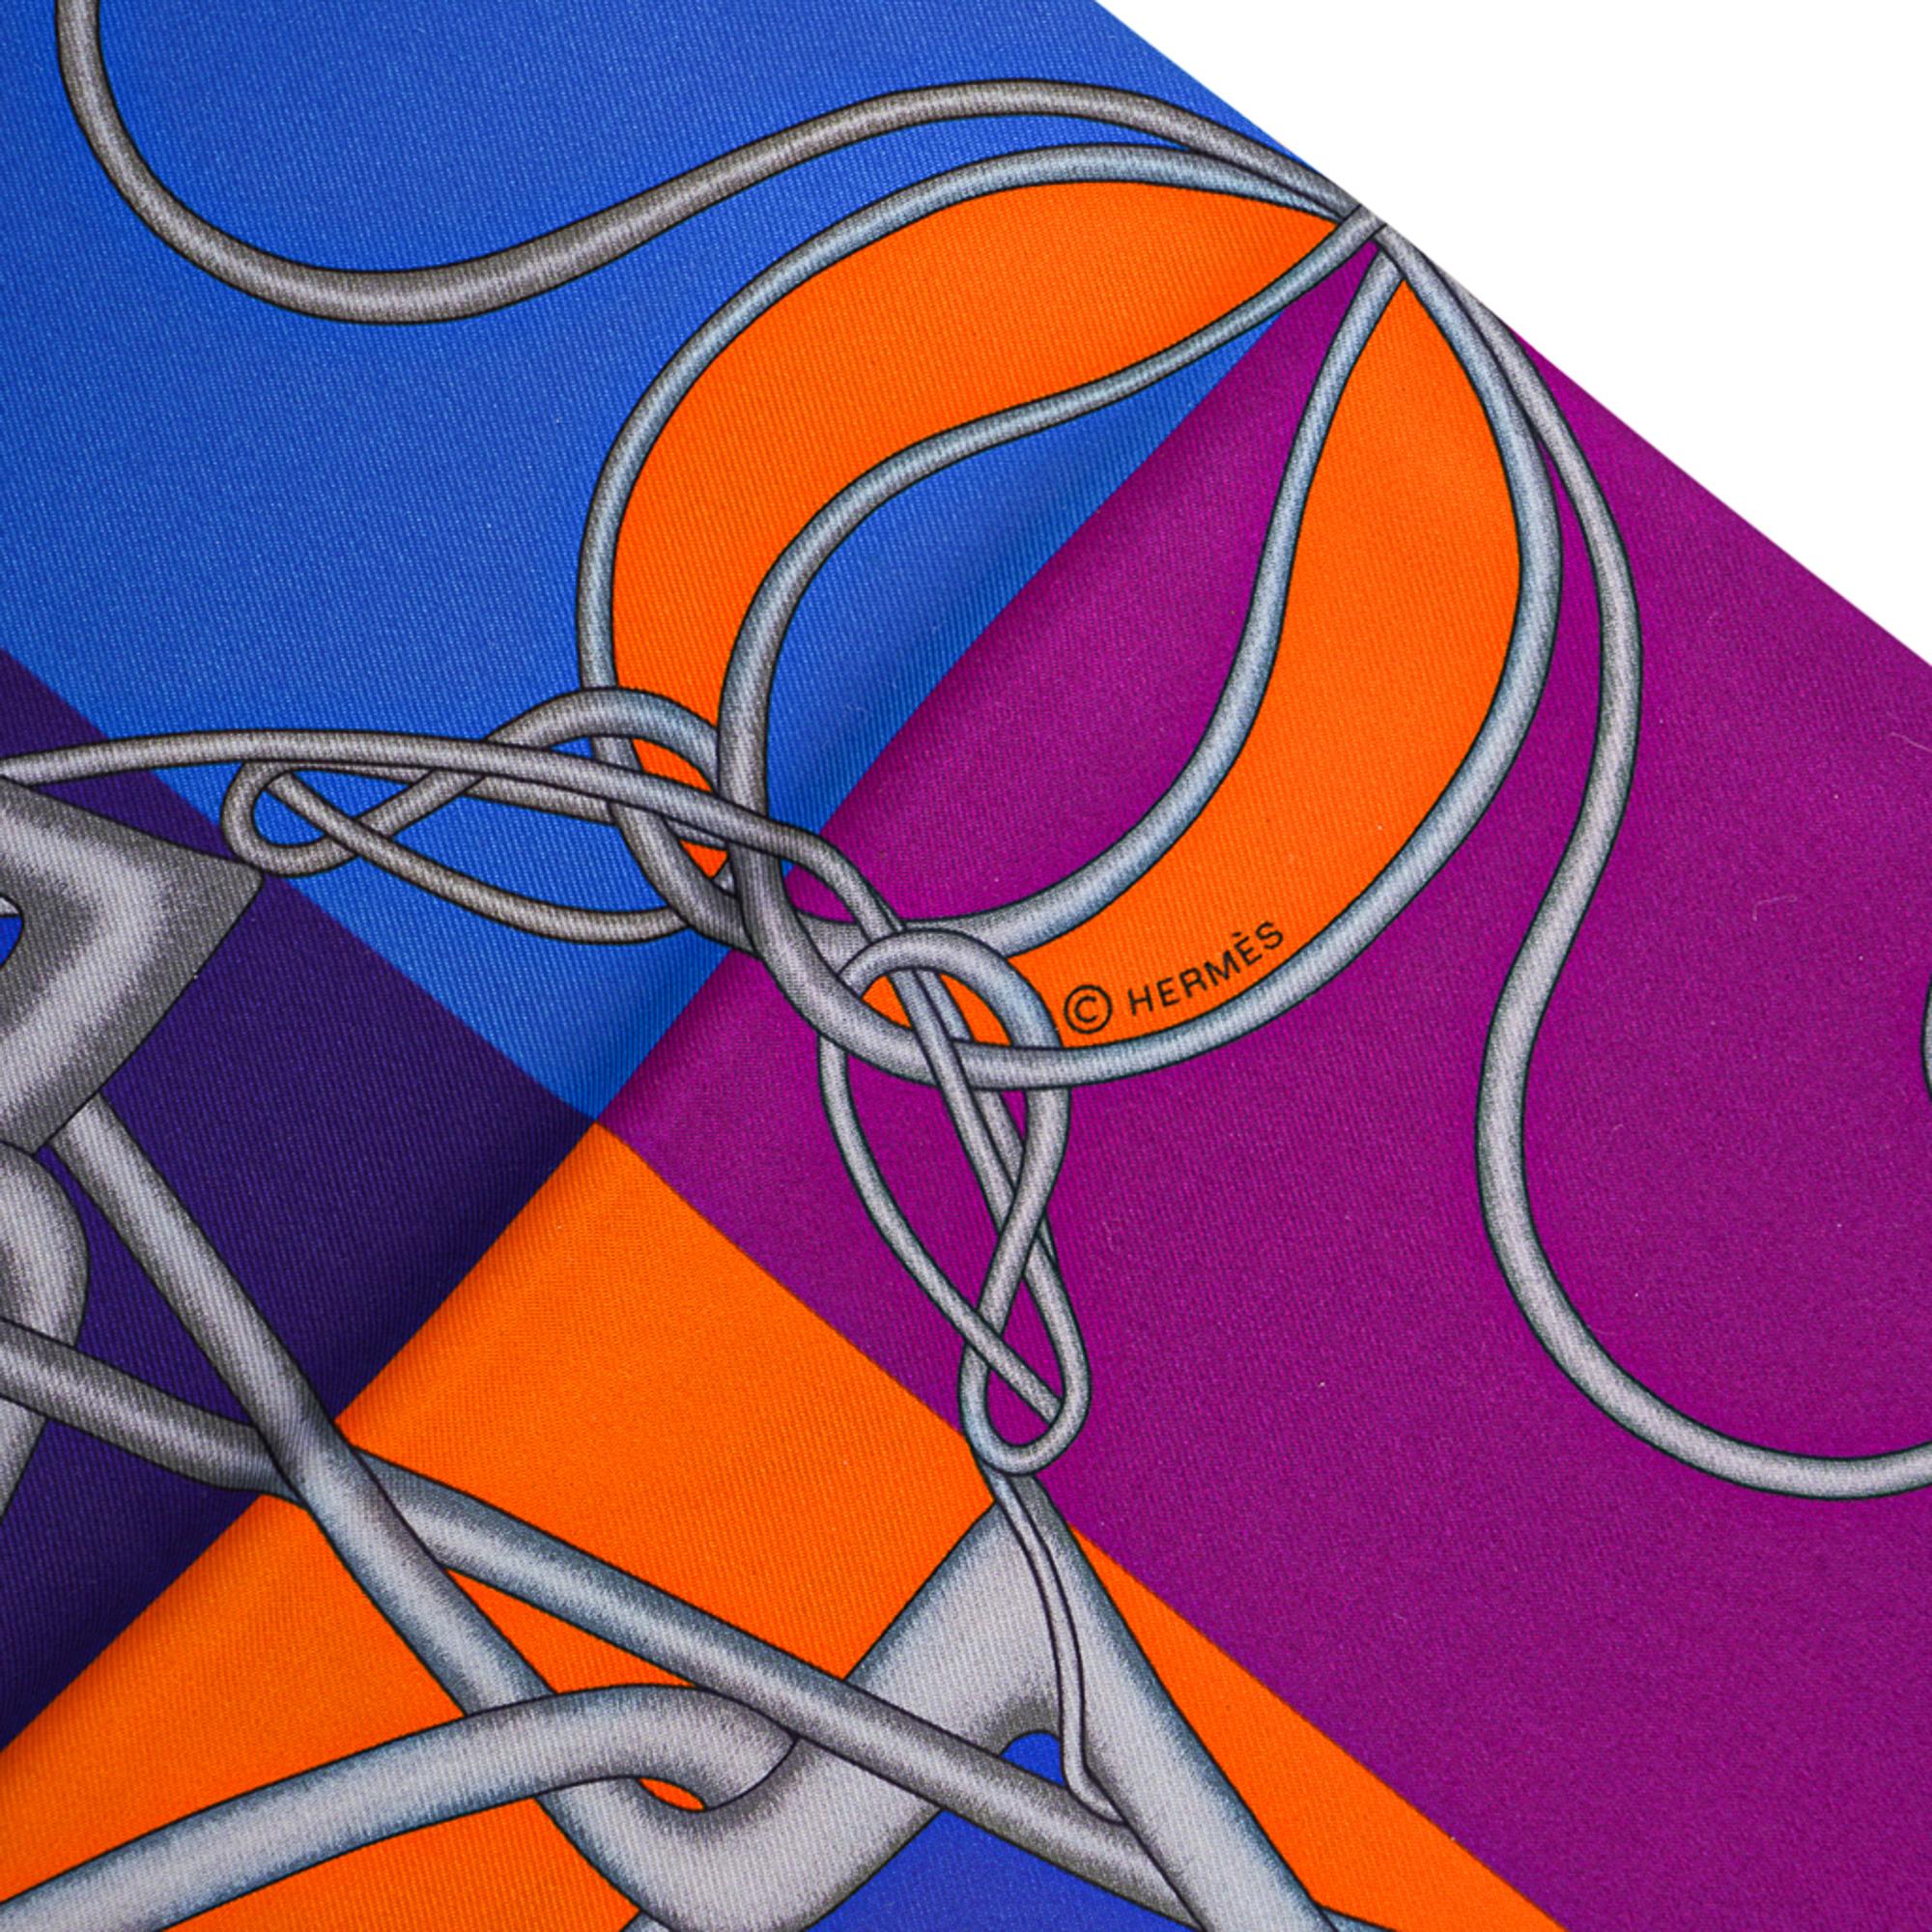 Mightychic propose une garantie d'authenticité Hermès Maxi - Twilly Cut Coup de Fouet au Bloc en Indigo, Orange et Blanc.
Cet accessoire iconique d'Hermès peut être porté d'une multitude de façons pour ajouter une touche ludique à votre